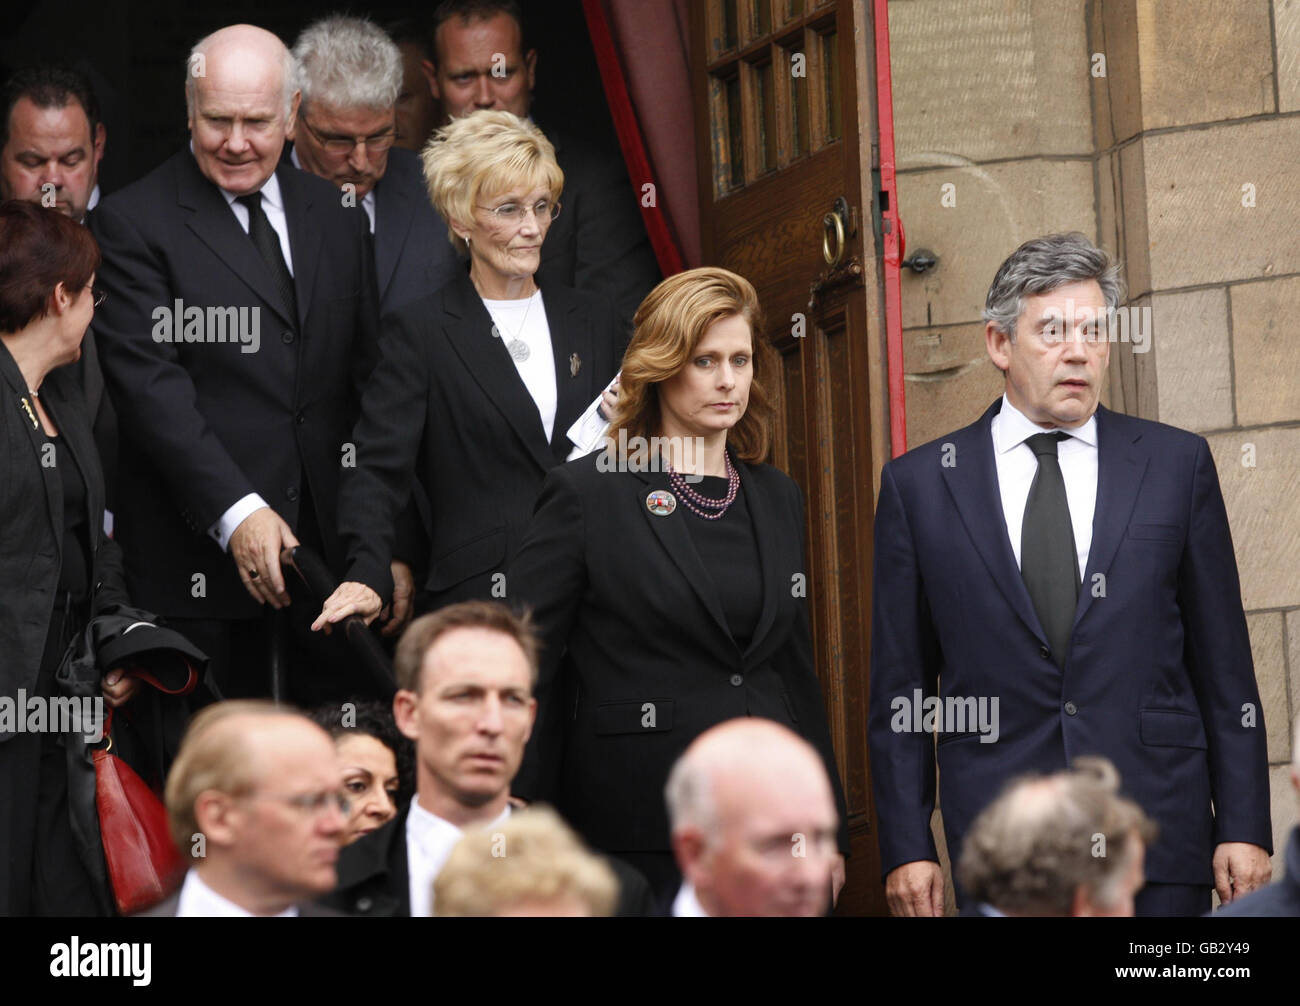 Il primo Ministro Gordon Brown (a destra) e la moglie Sarah Brown (al centro) con il Dr. John Reid MP (all'estrema sinistra) e il Segretario di Stato per la Difesa, Des Browne MP (all'estrema sinistra), mentre lasciano i funerali dell'ex deputato laburista John MacDougall alla Chiesa di Erskine, Burntisland, Scozia. Foto Stock